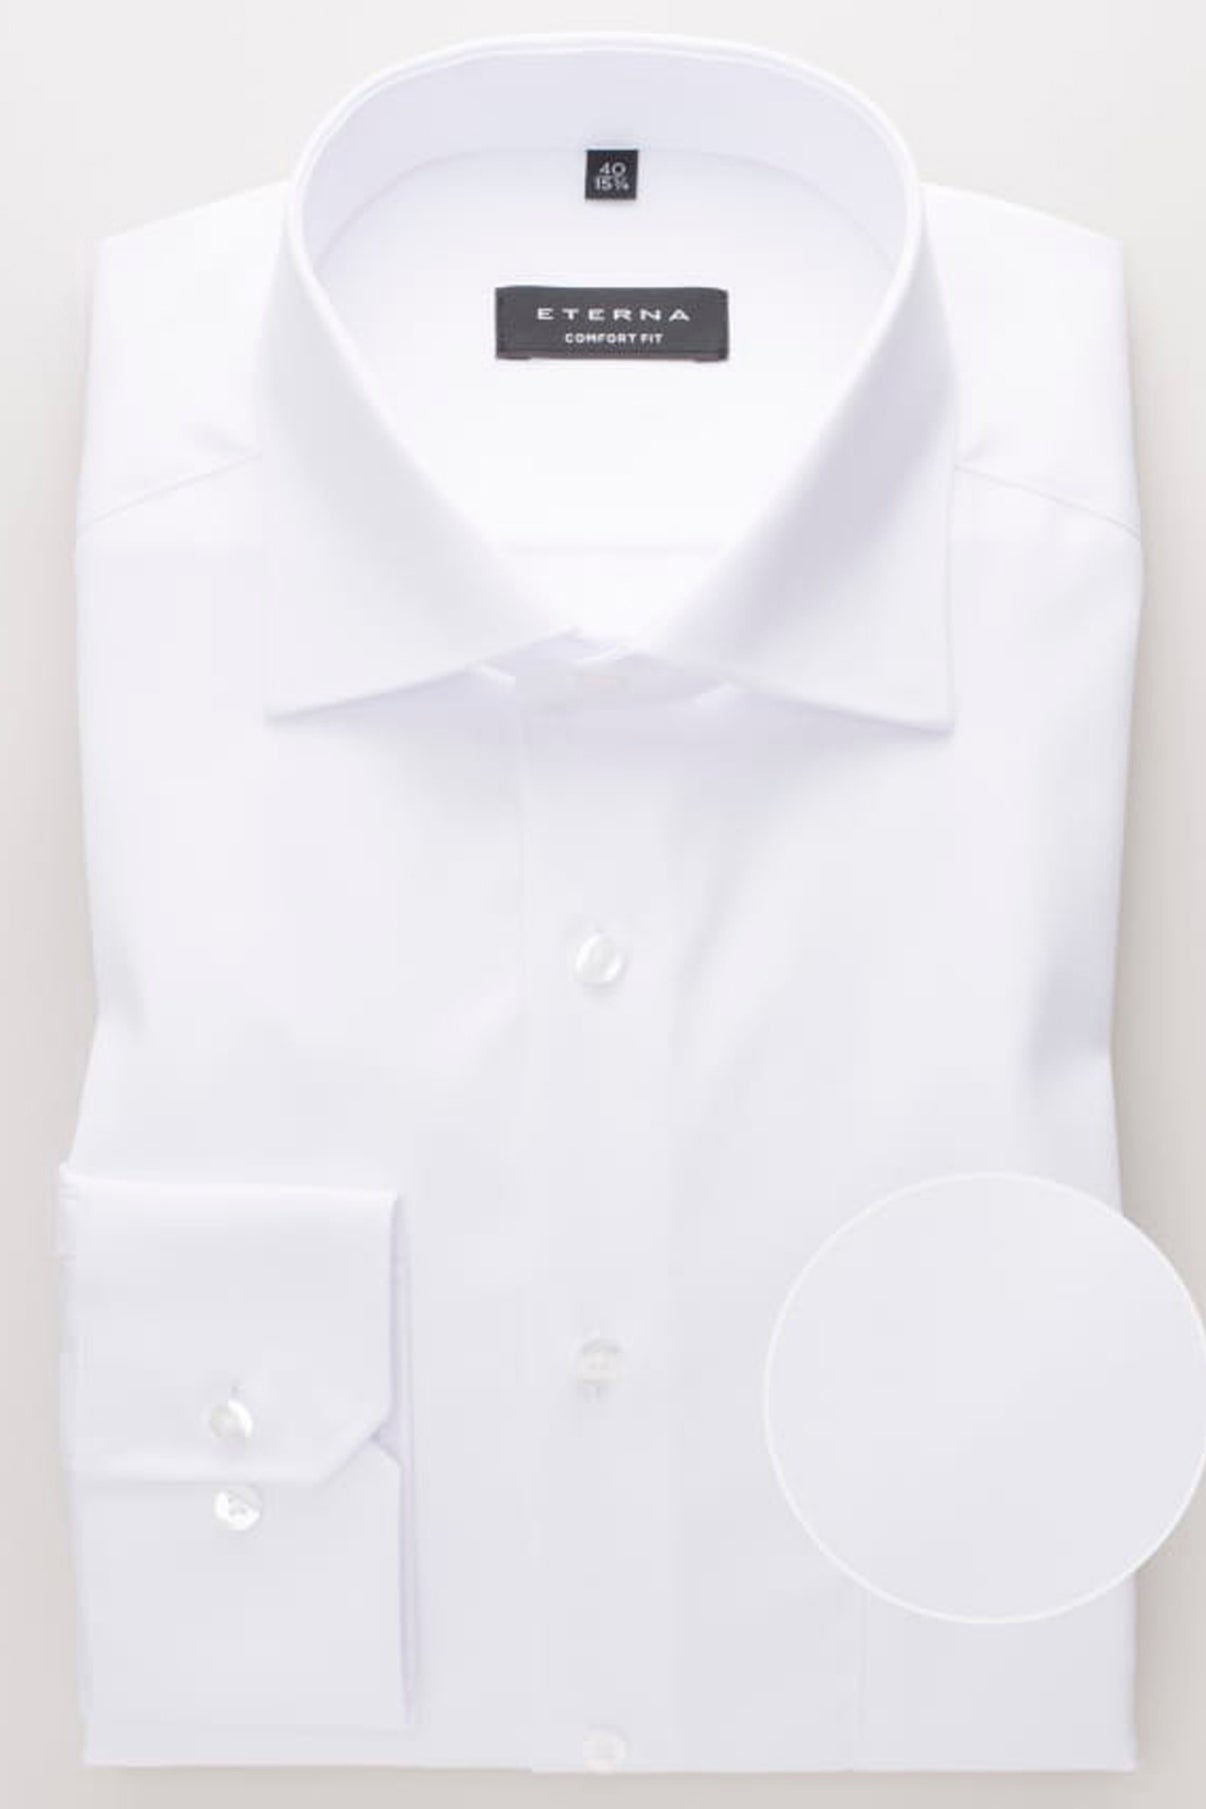 Eterna Skjorte-8817-E19K Covershirt